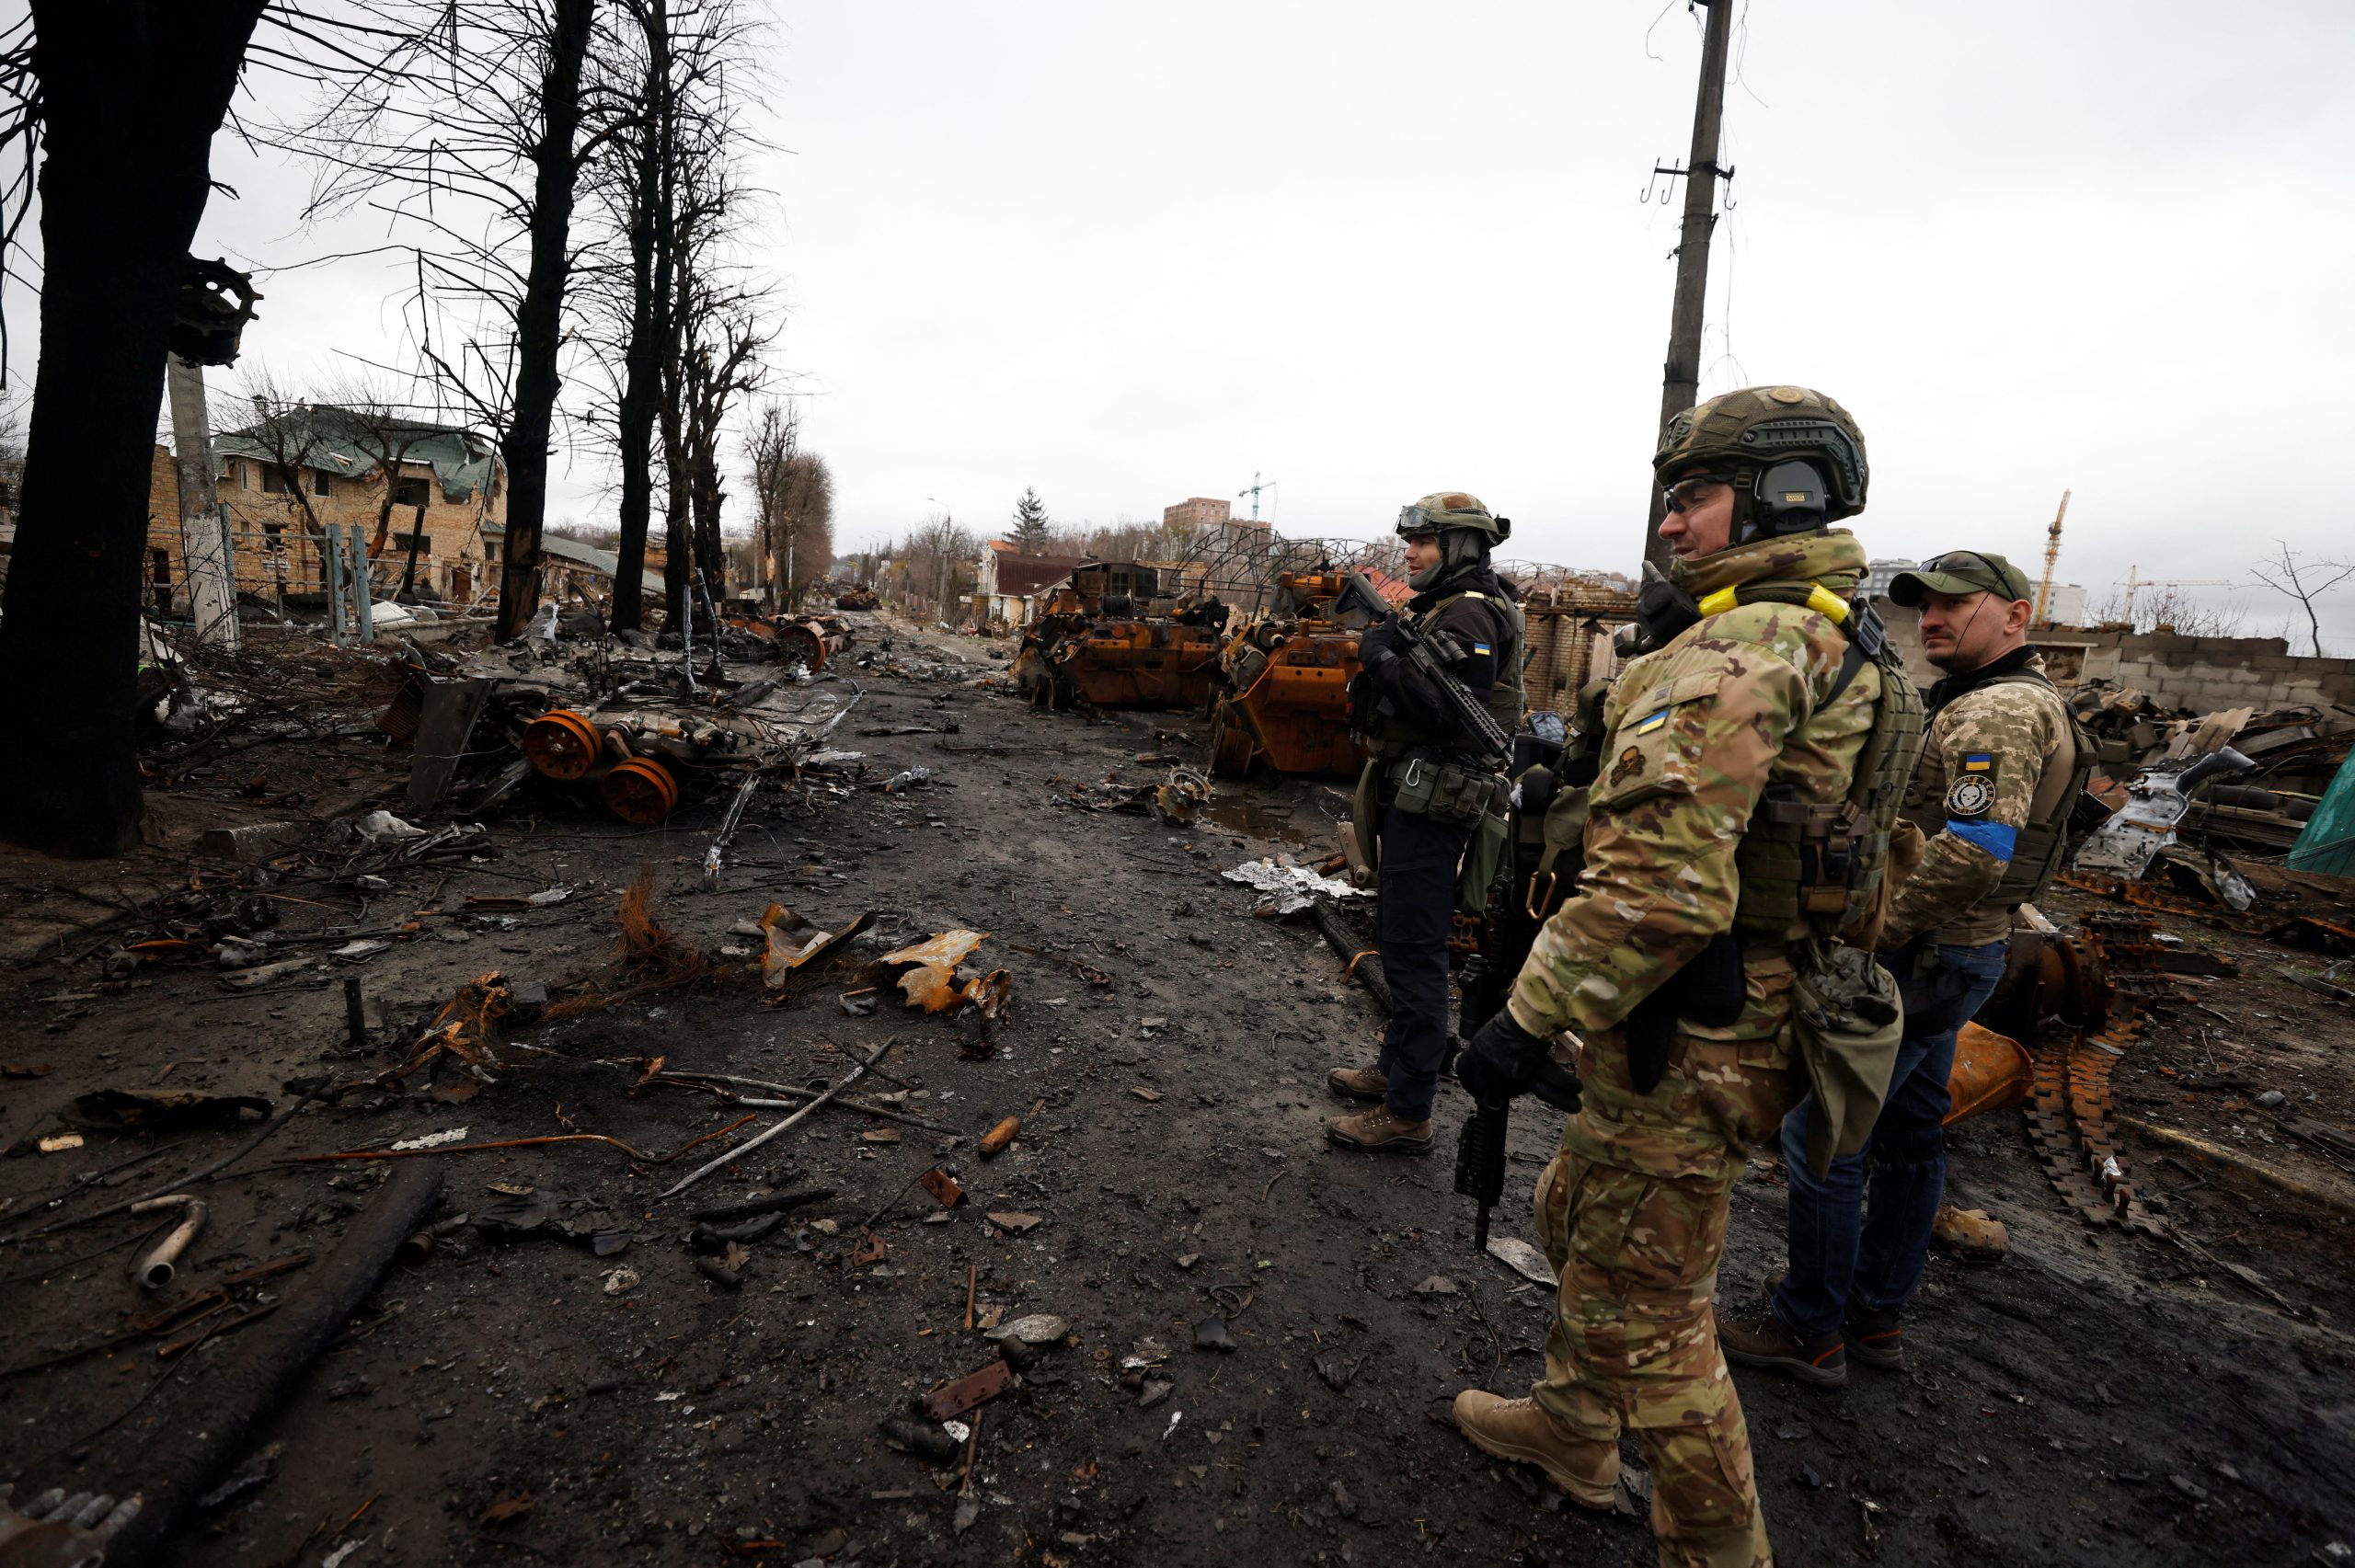 Βίντεο δείχνει ομάδες Ουκρανών στρατιωτών να αποχωρούν από την Αβντίιβκα